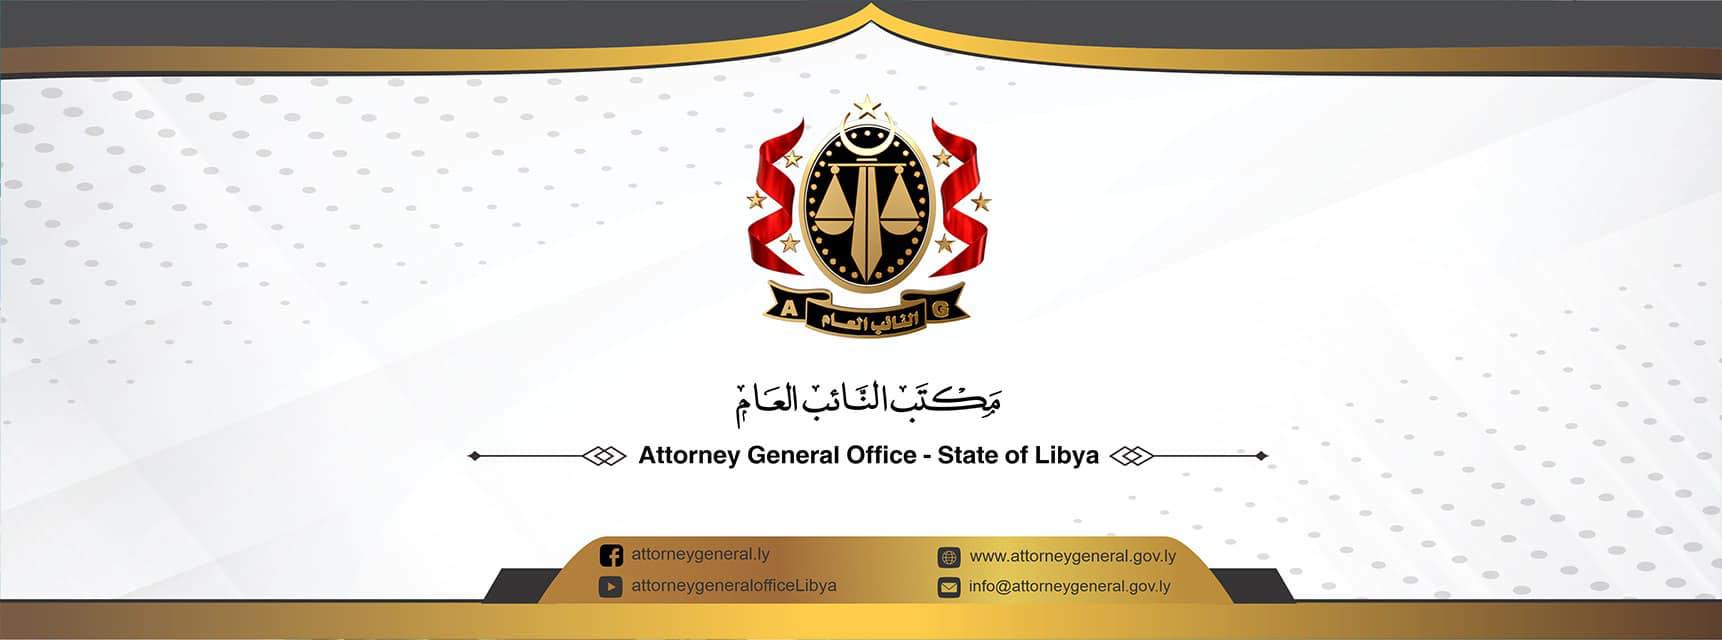 محكمة جنايات طرابلس تصدر حكماً بإدانة مسؤولين سابقين في وكالة مصرف الجمهورية- المستقبل.